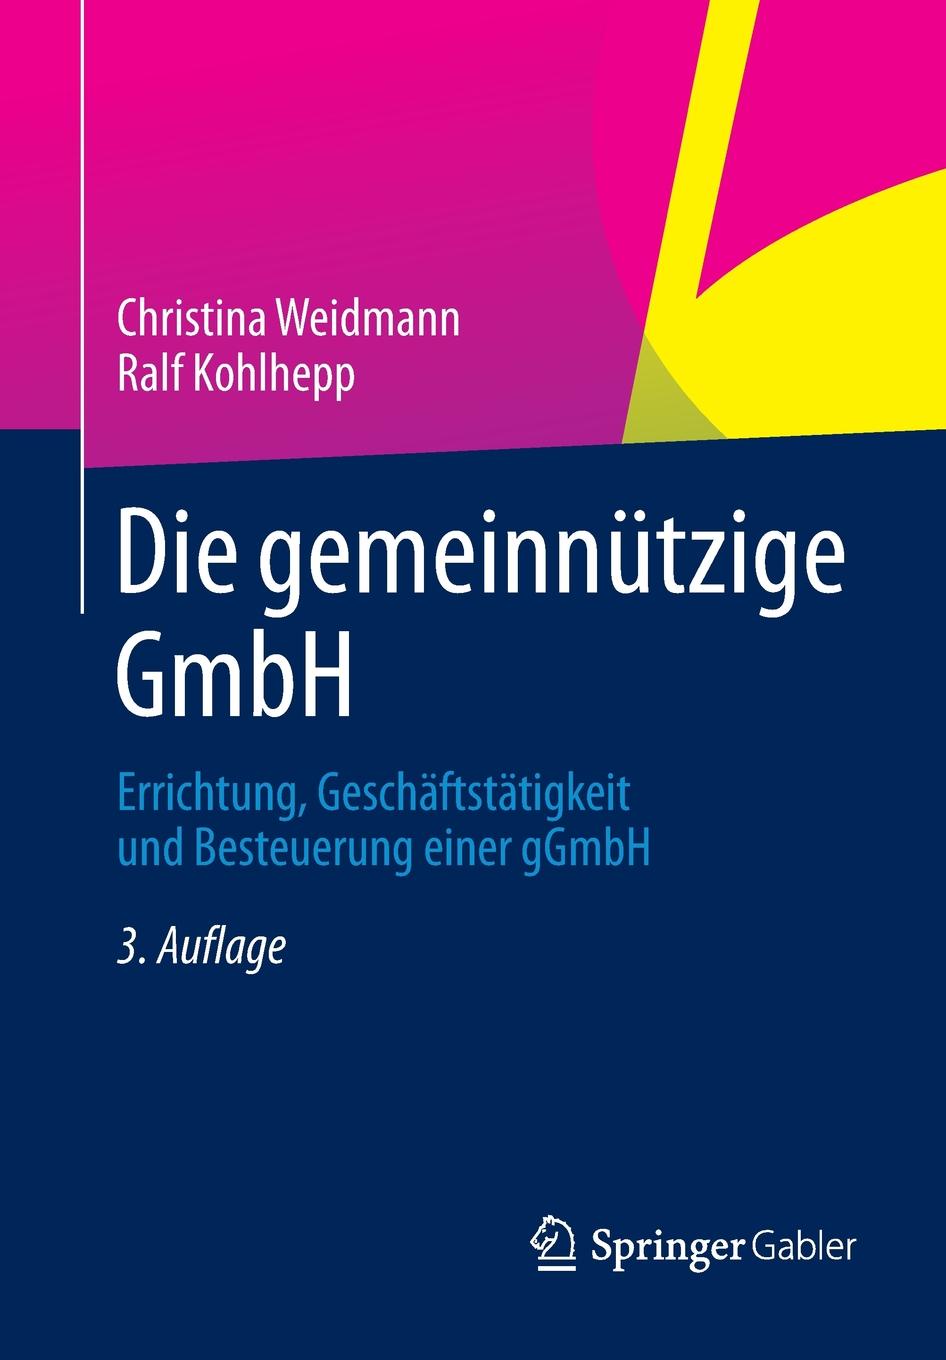 Die gemeinnutzige GmbH. Errichtung, Geschaftstatigkeit und Besteuerung einer gGmbH